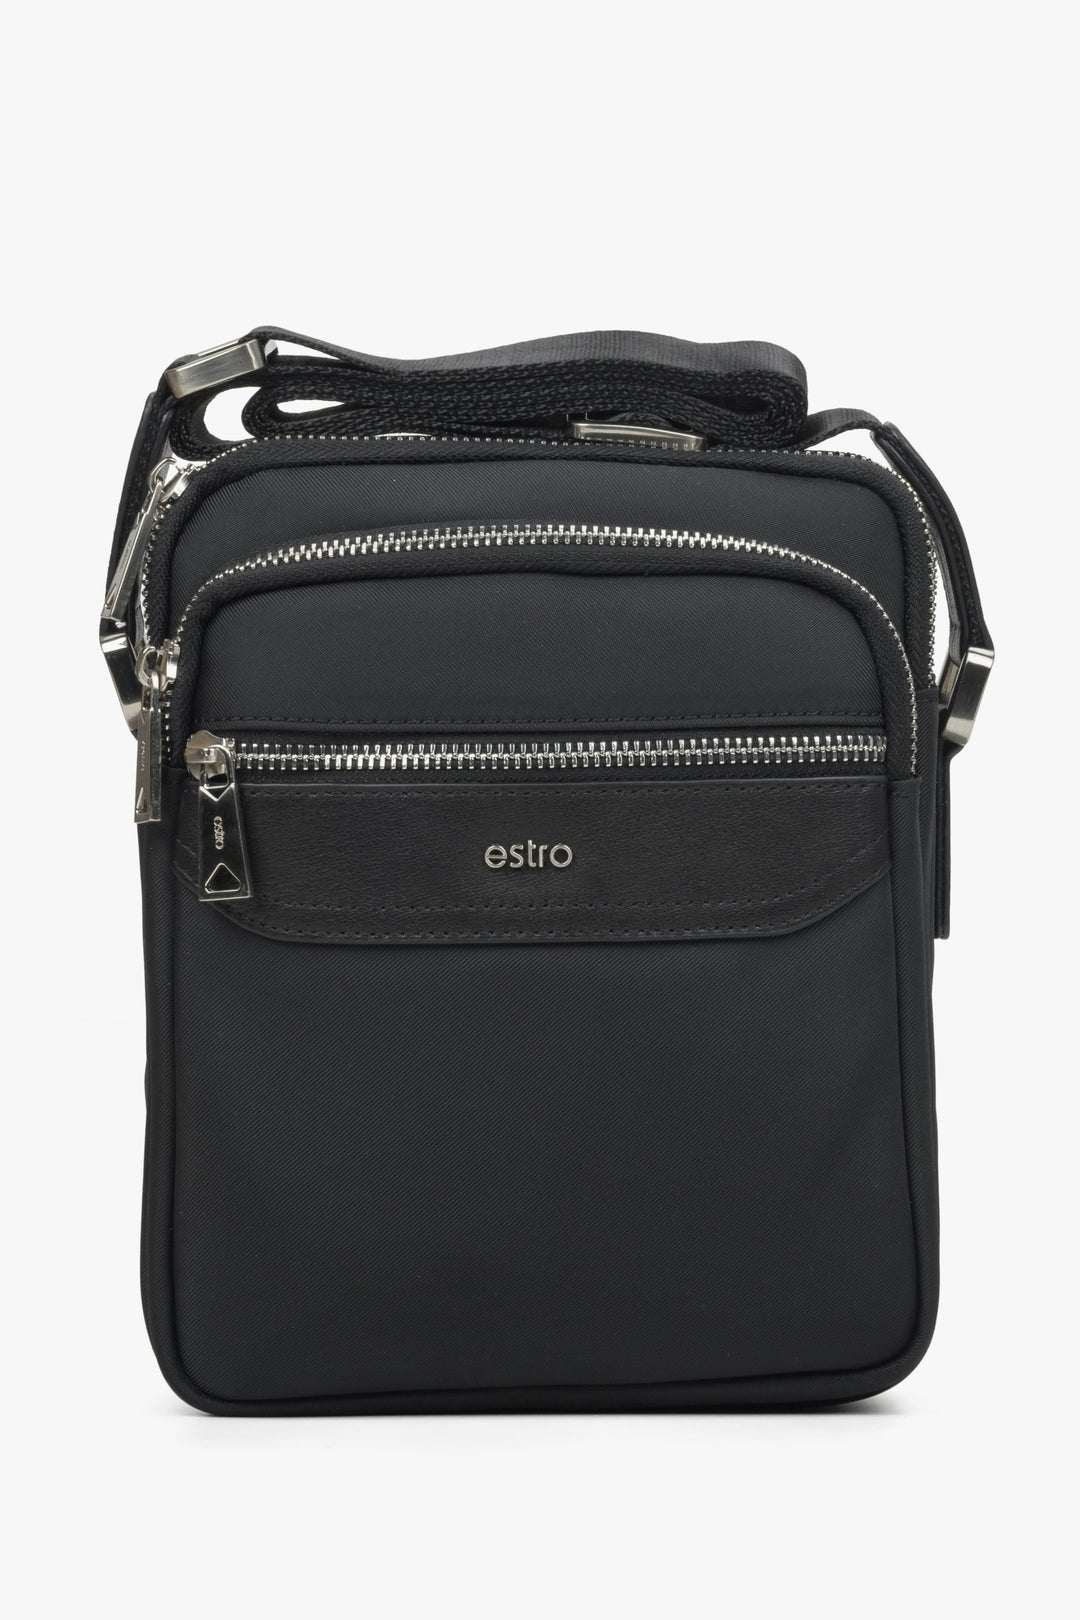 Men's Black Messenger Bag made of Leather Estro ER00114402.